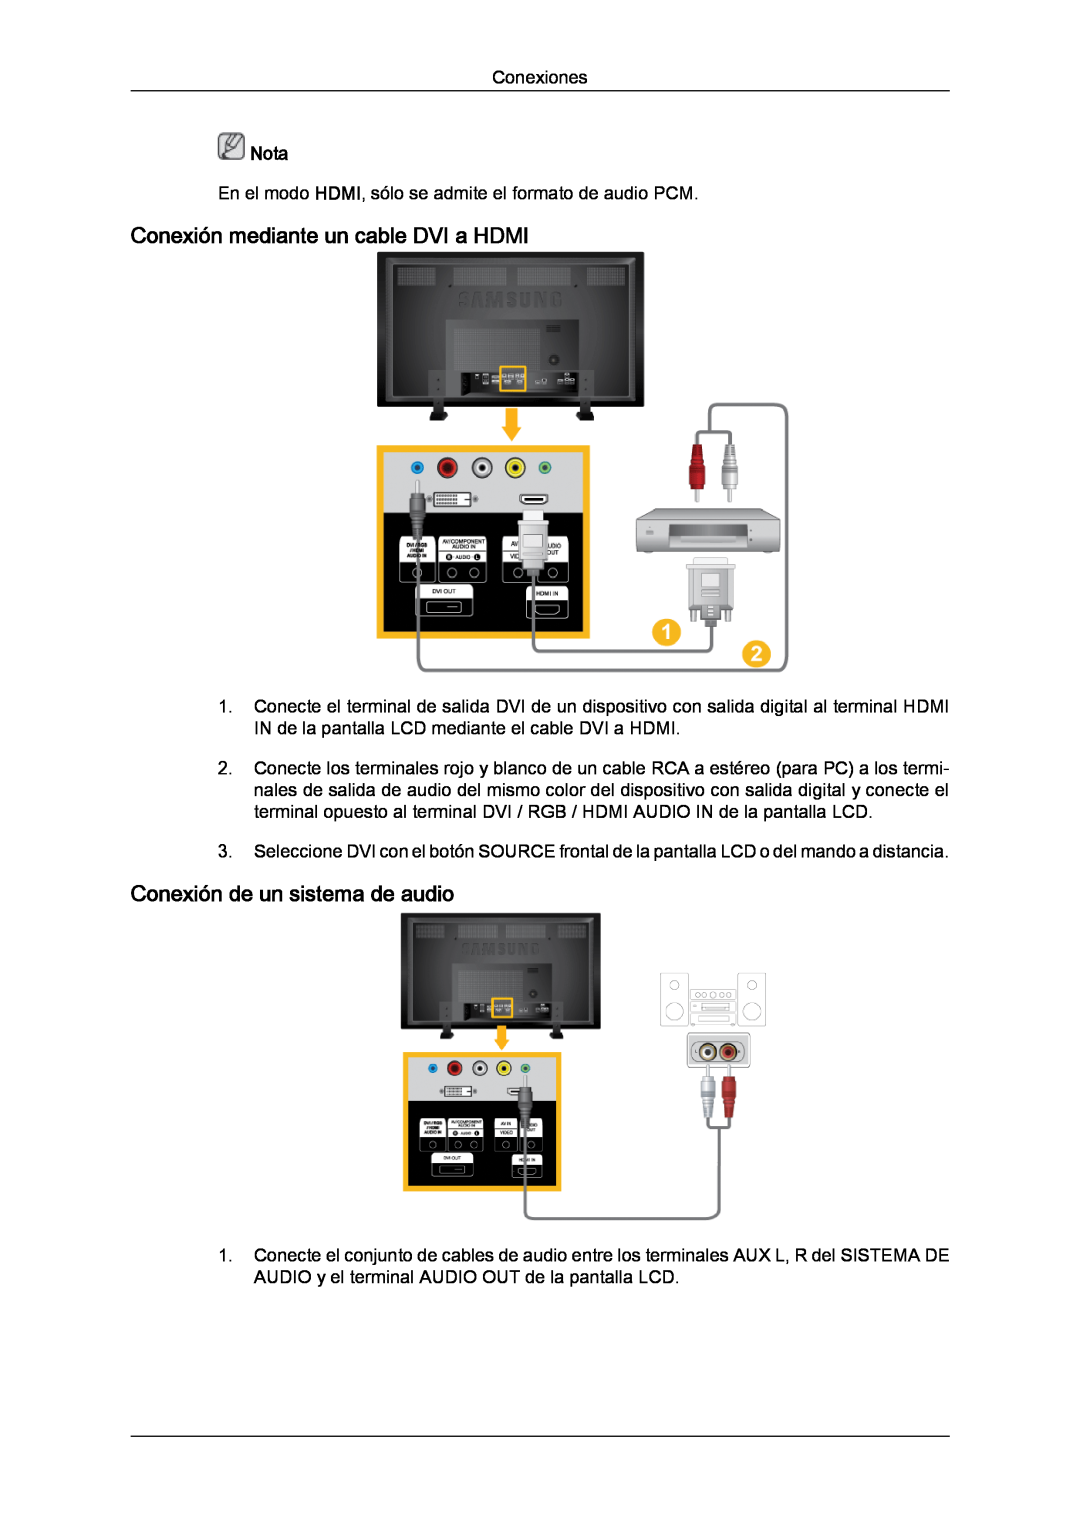 Samsung LH82TCUMBG/EN, LH70TCUMBG/EN manual Conexión mediante un cable DVI a HDMI, Conexión de un sistema de audio, Nota 